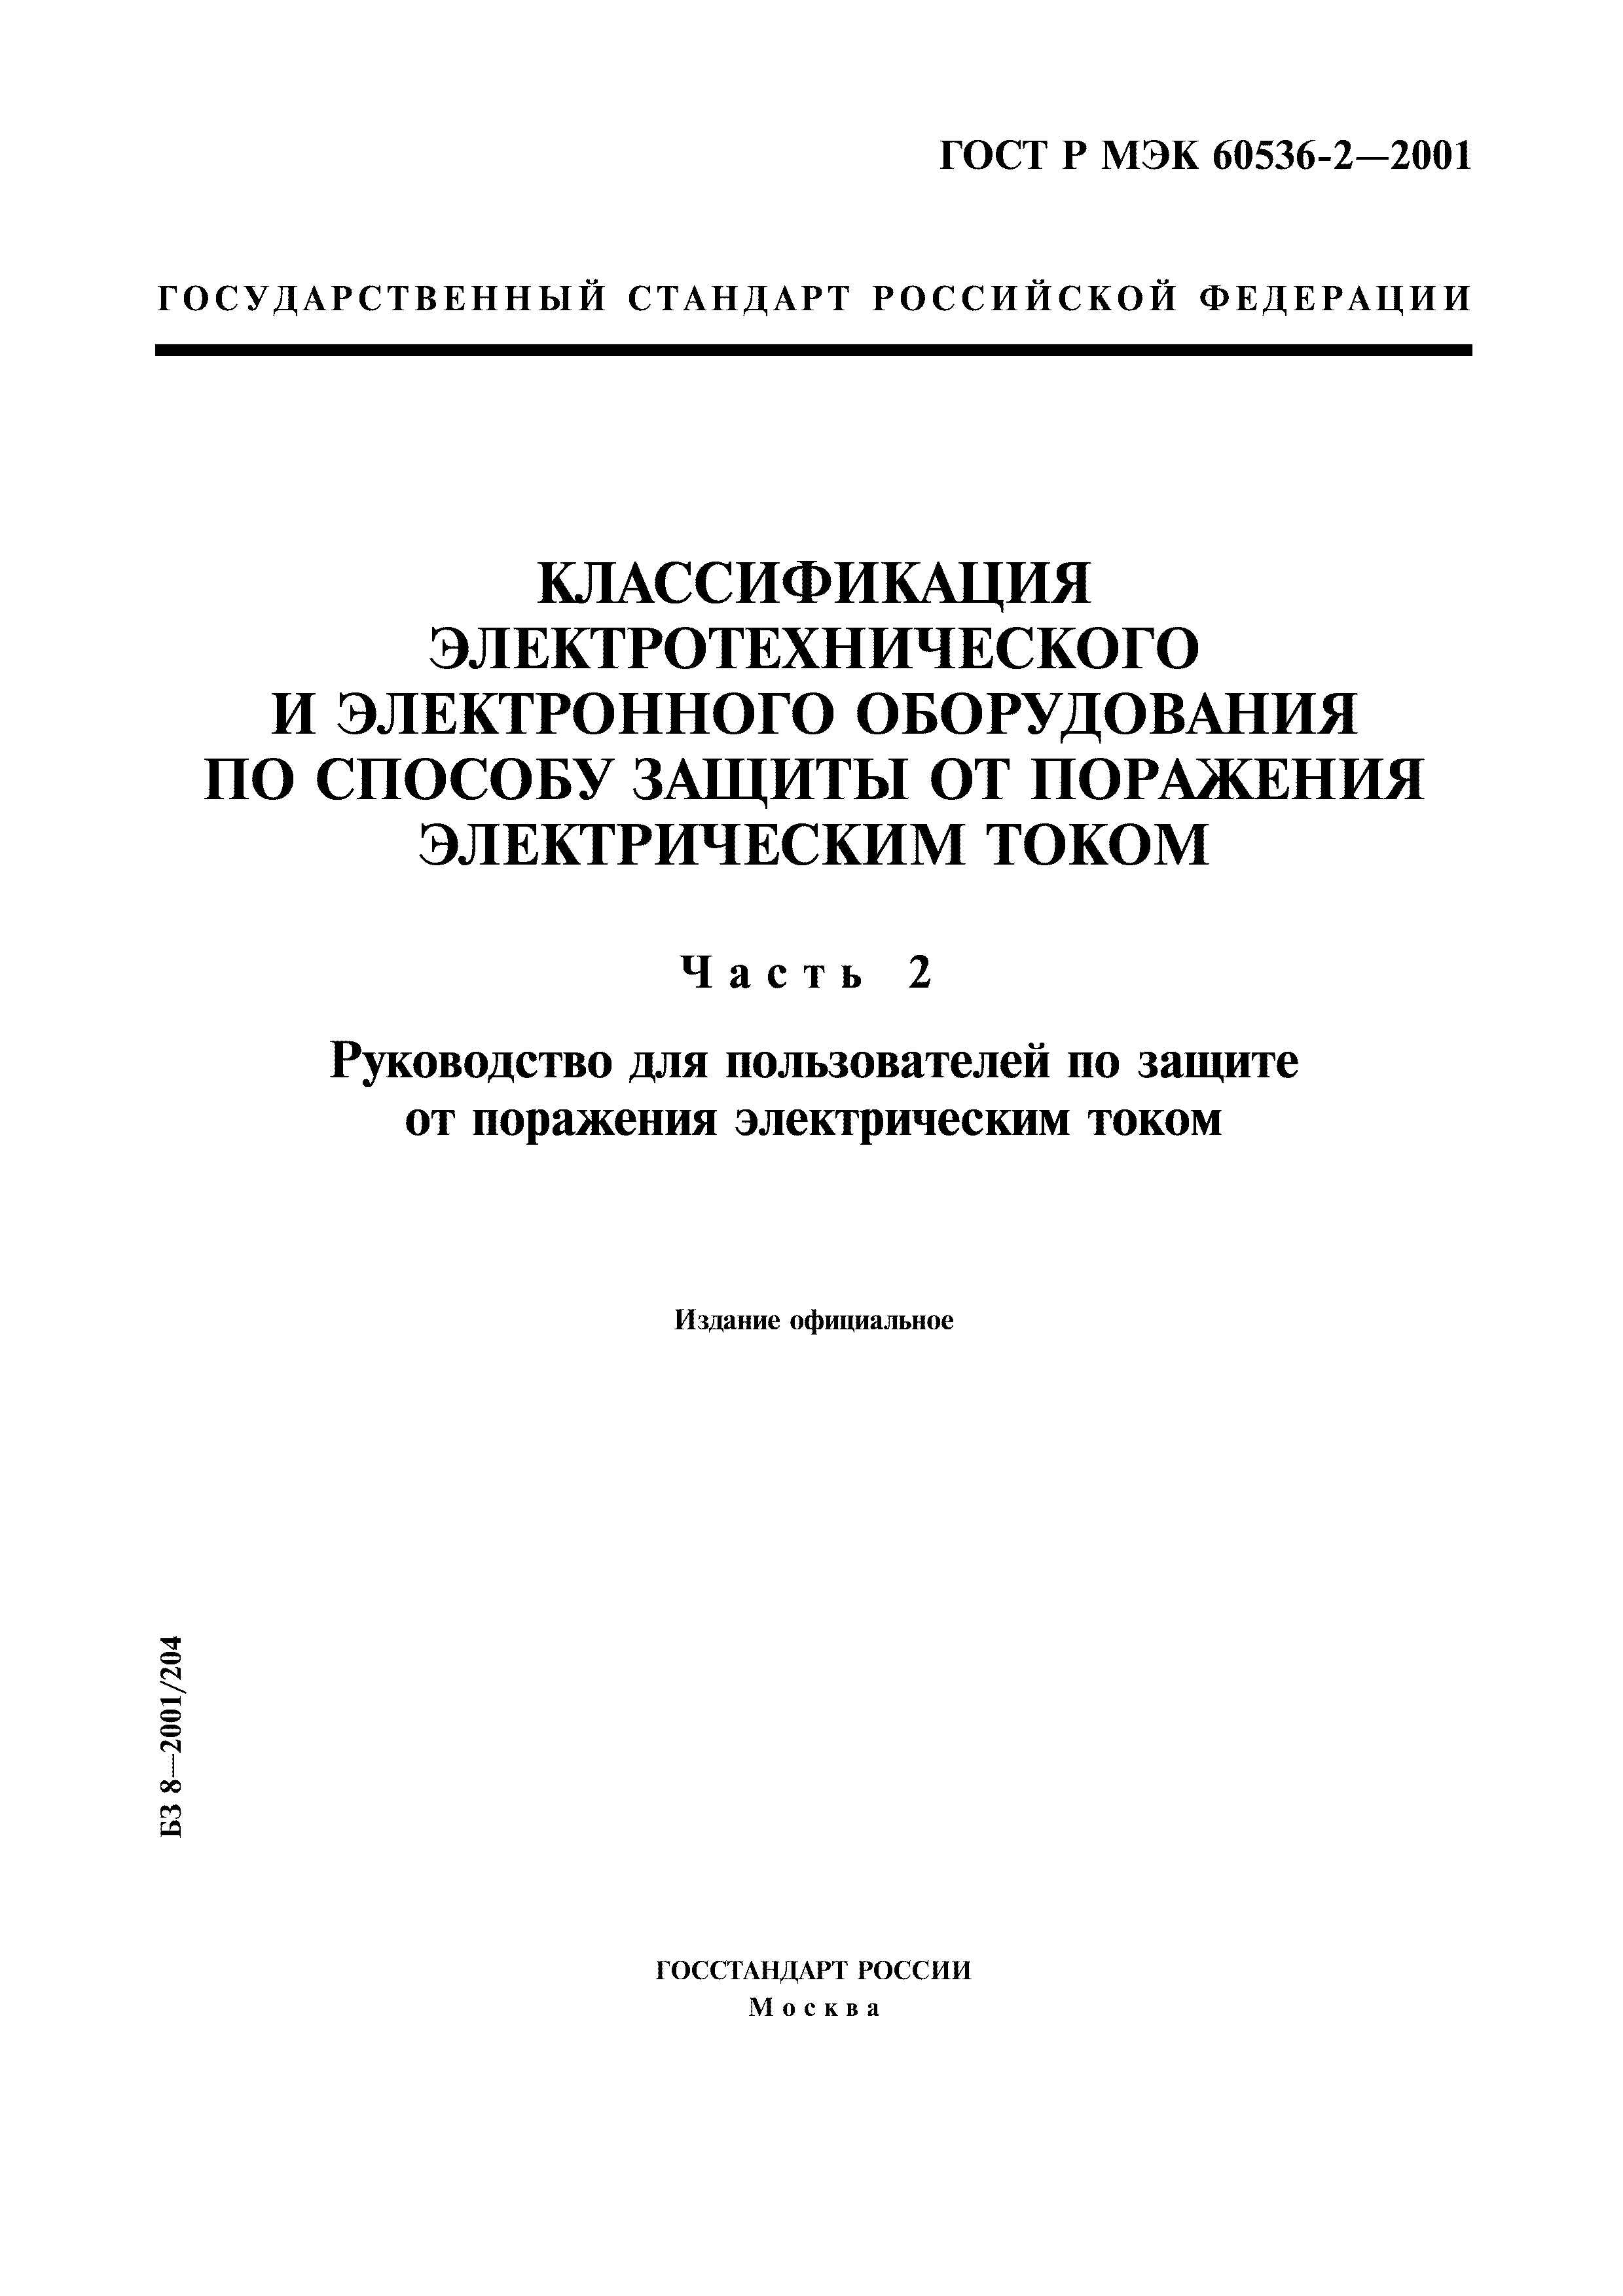 ГОСТ Р МЭК 60536-2-2001